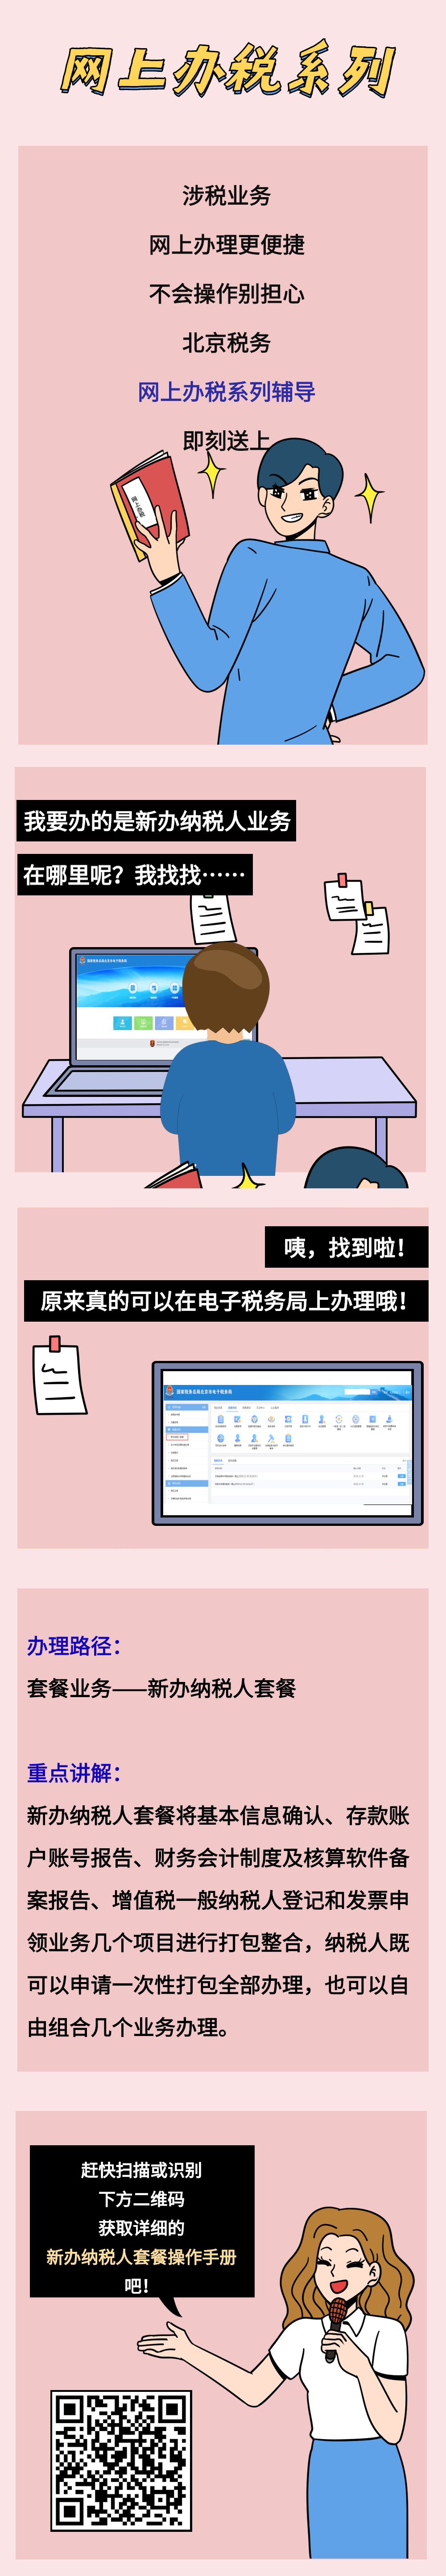 北京税务 自由微信 Freewechat